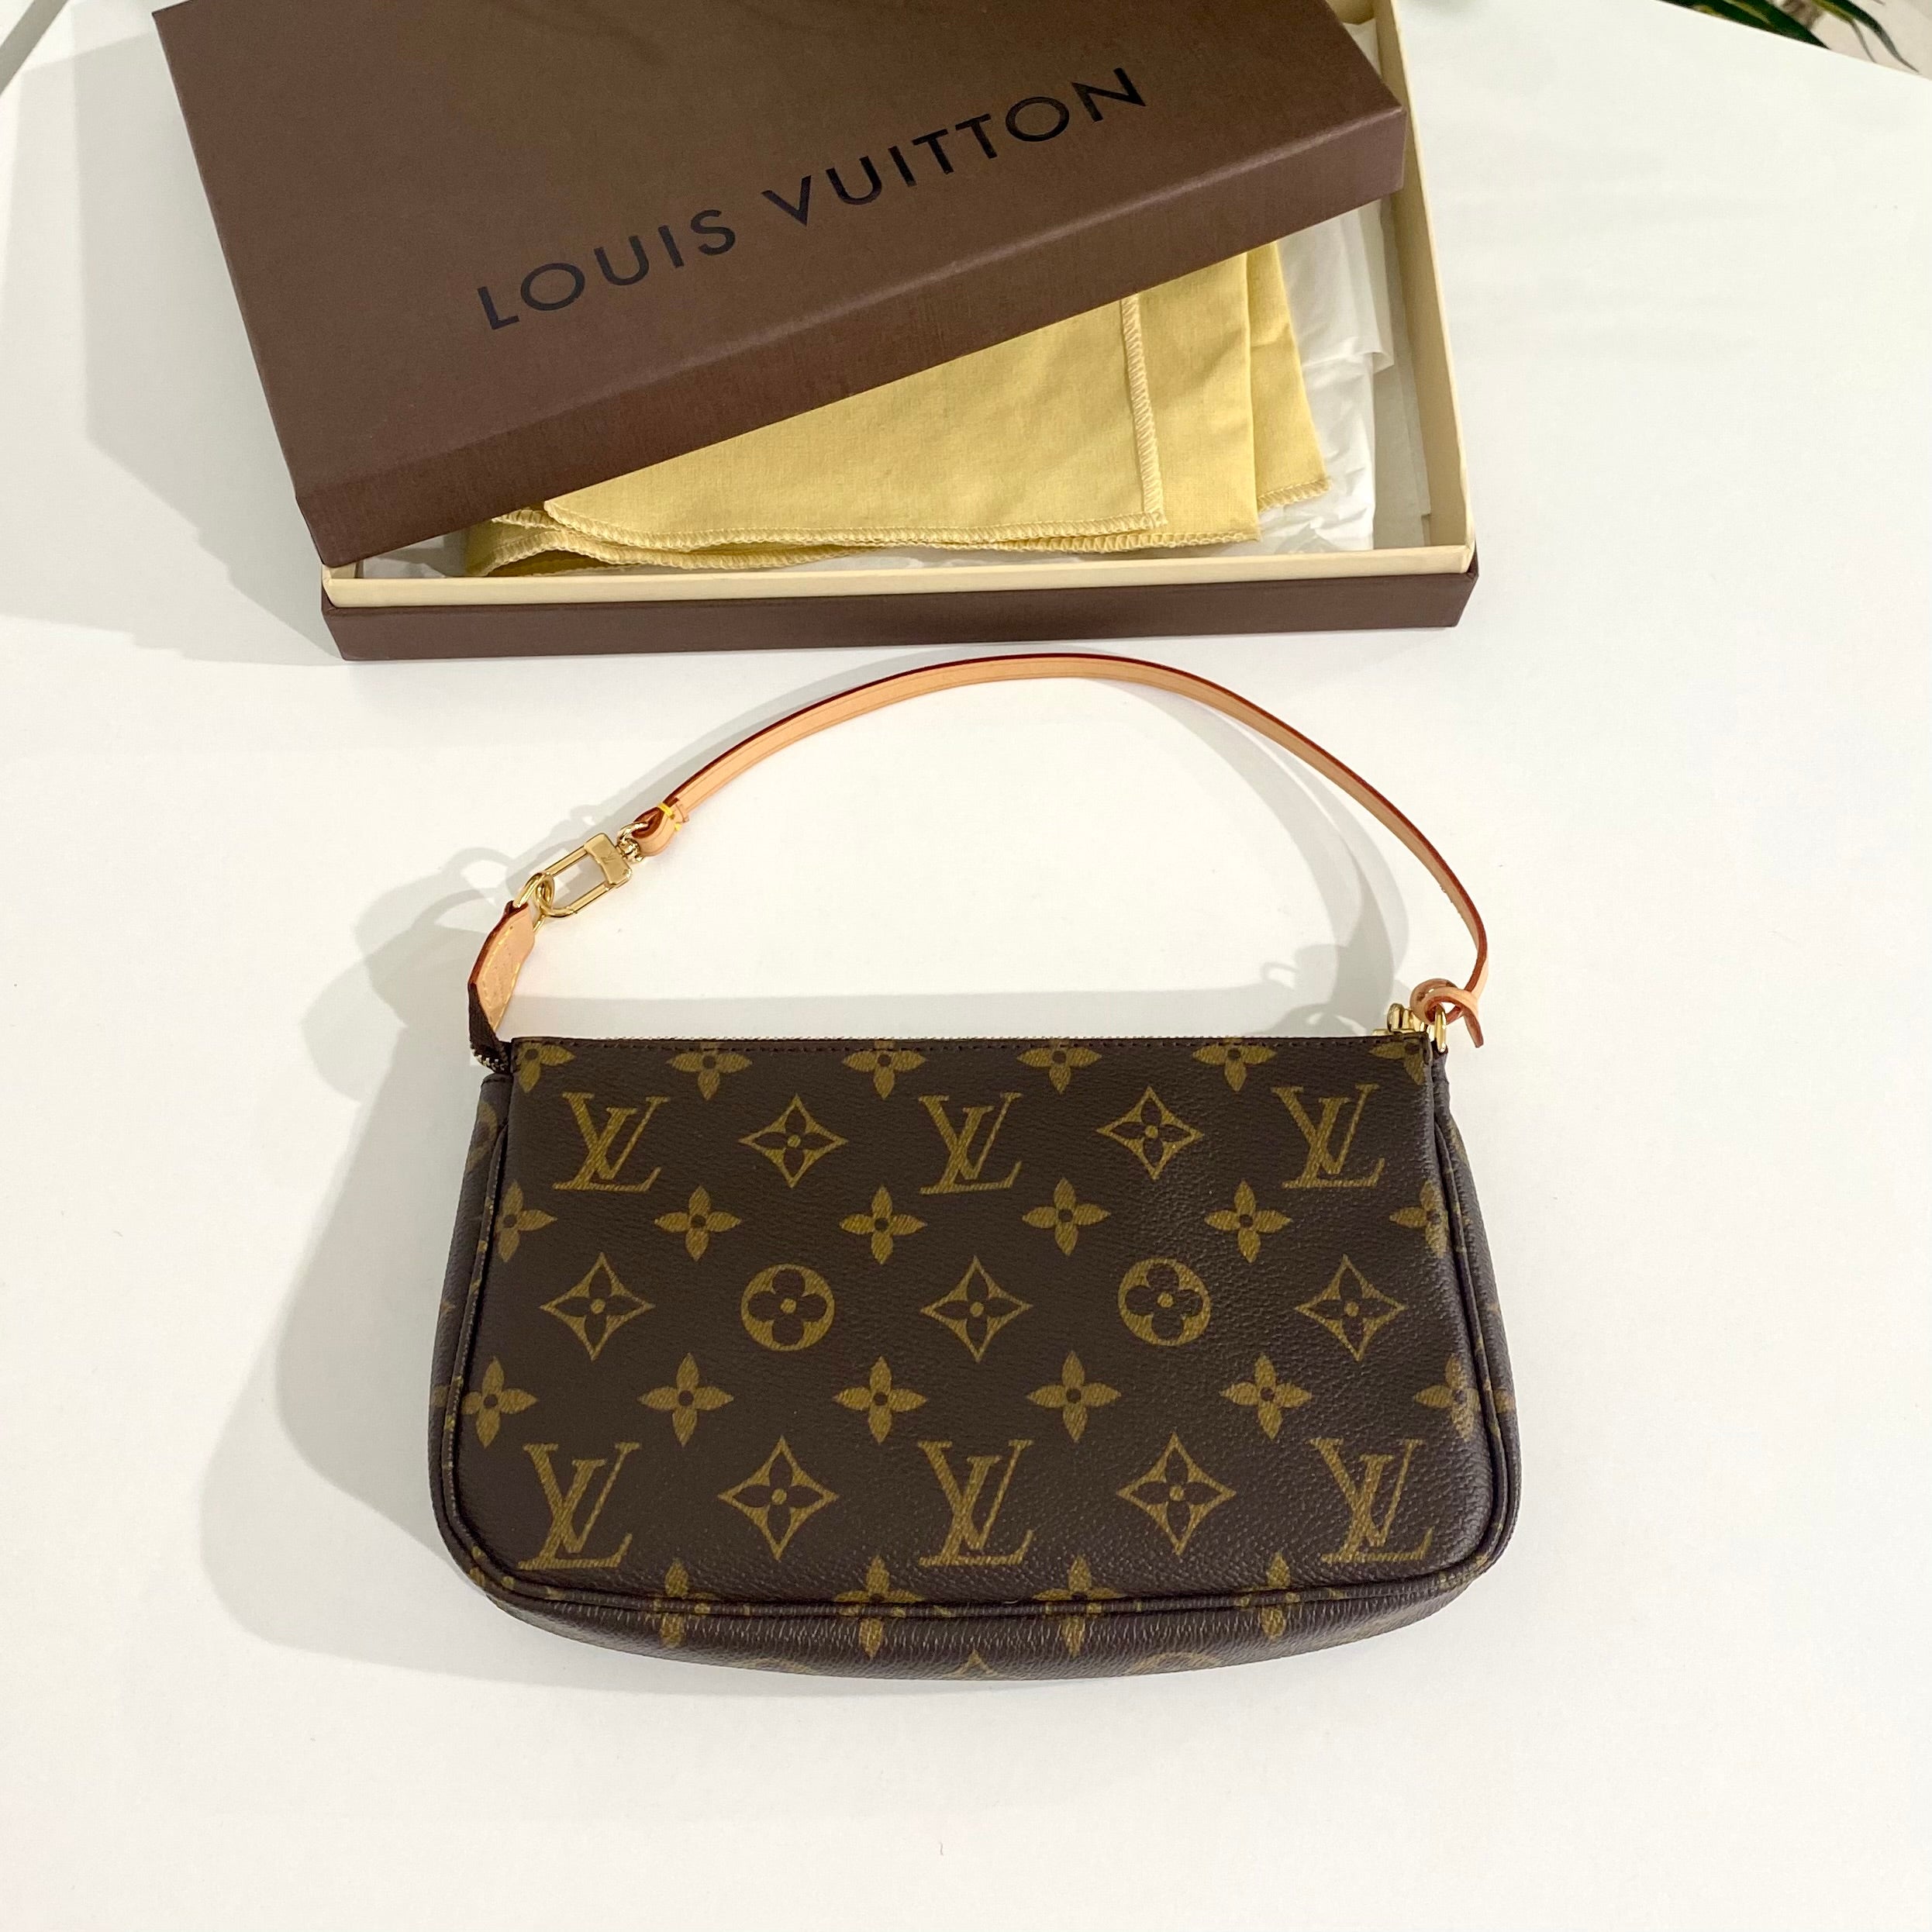 UNBOXING ~ Louis Vuitton Since 1854 Pochette Métis ~ Hot New Item 🛍 